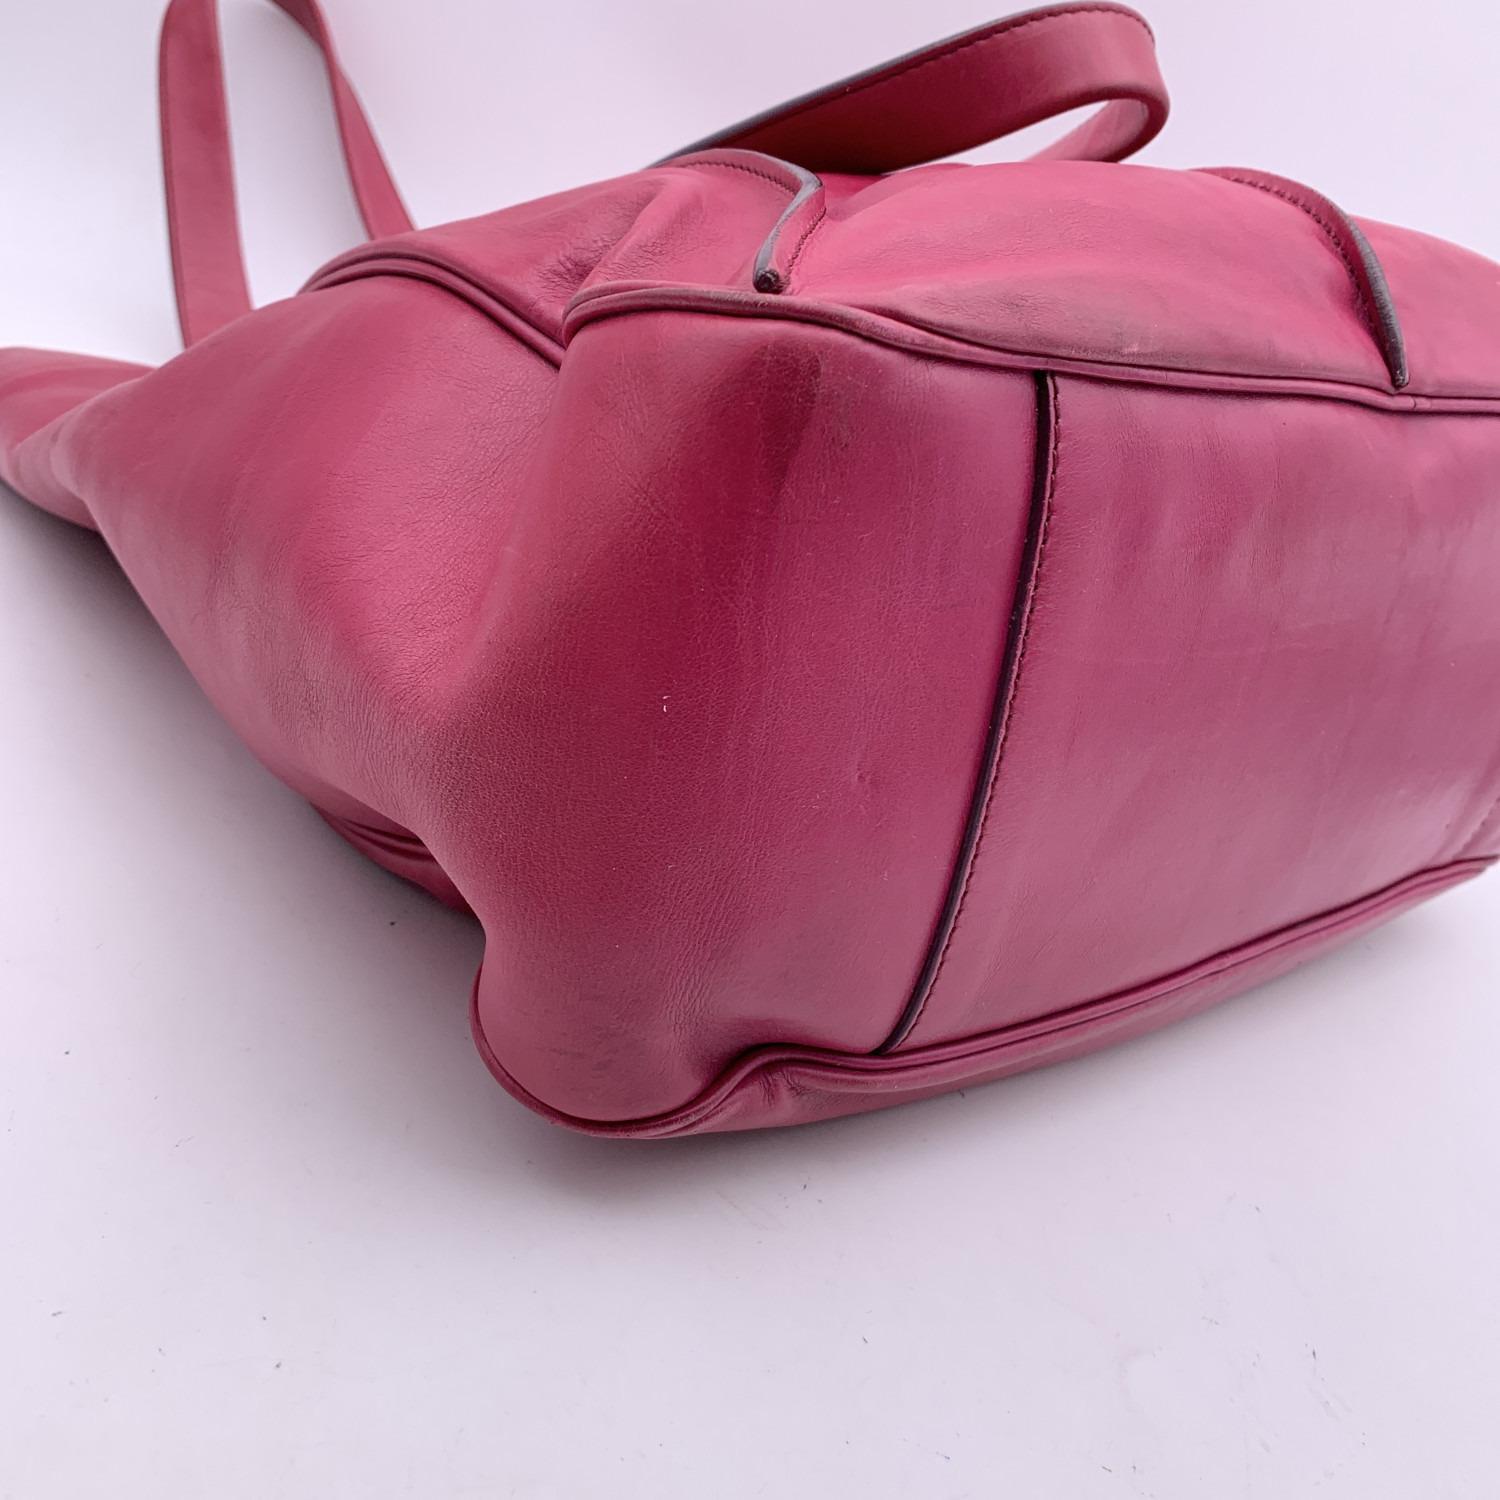 Celine - Sac fourre-tout porté épaule en cuir rose et violet avec sphères 5